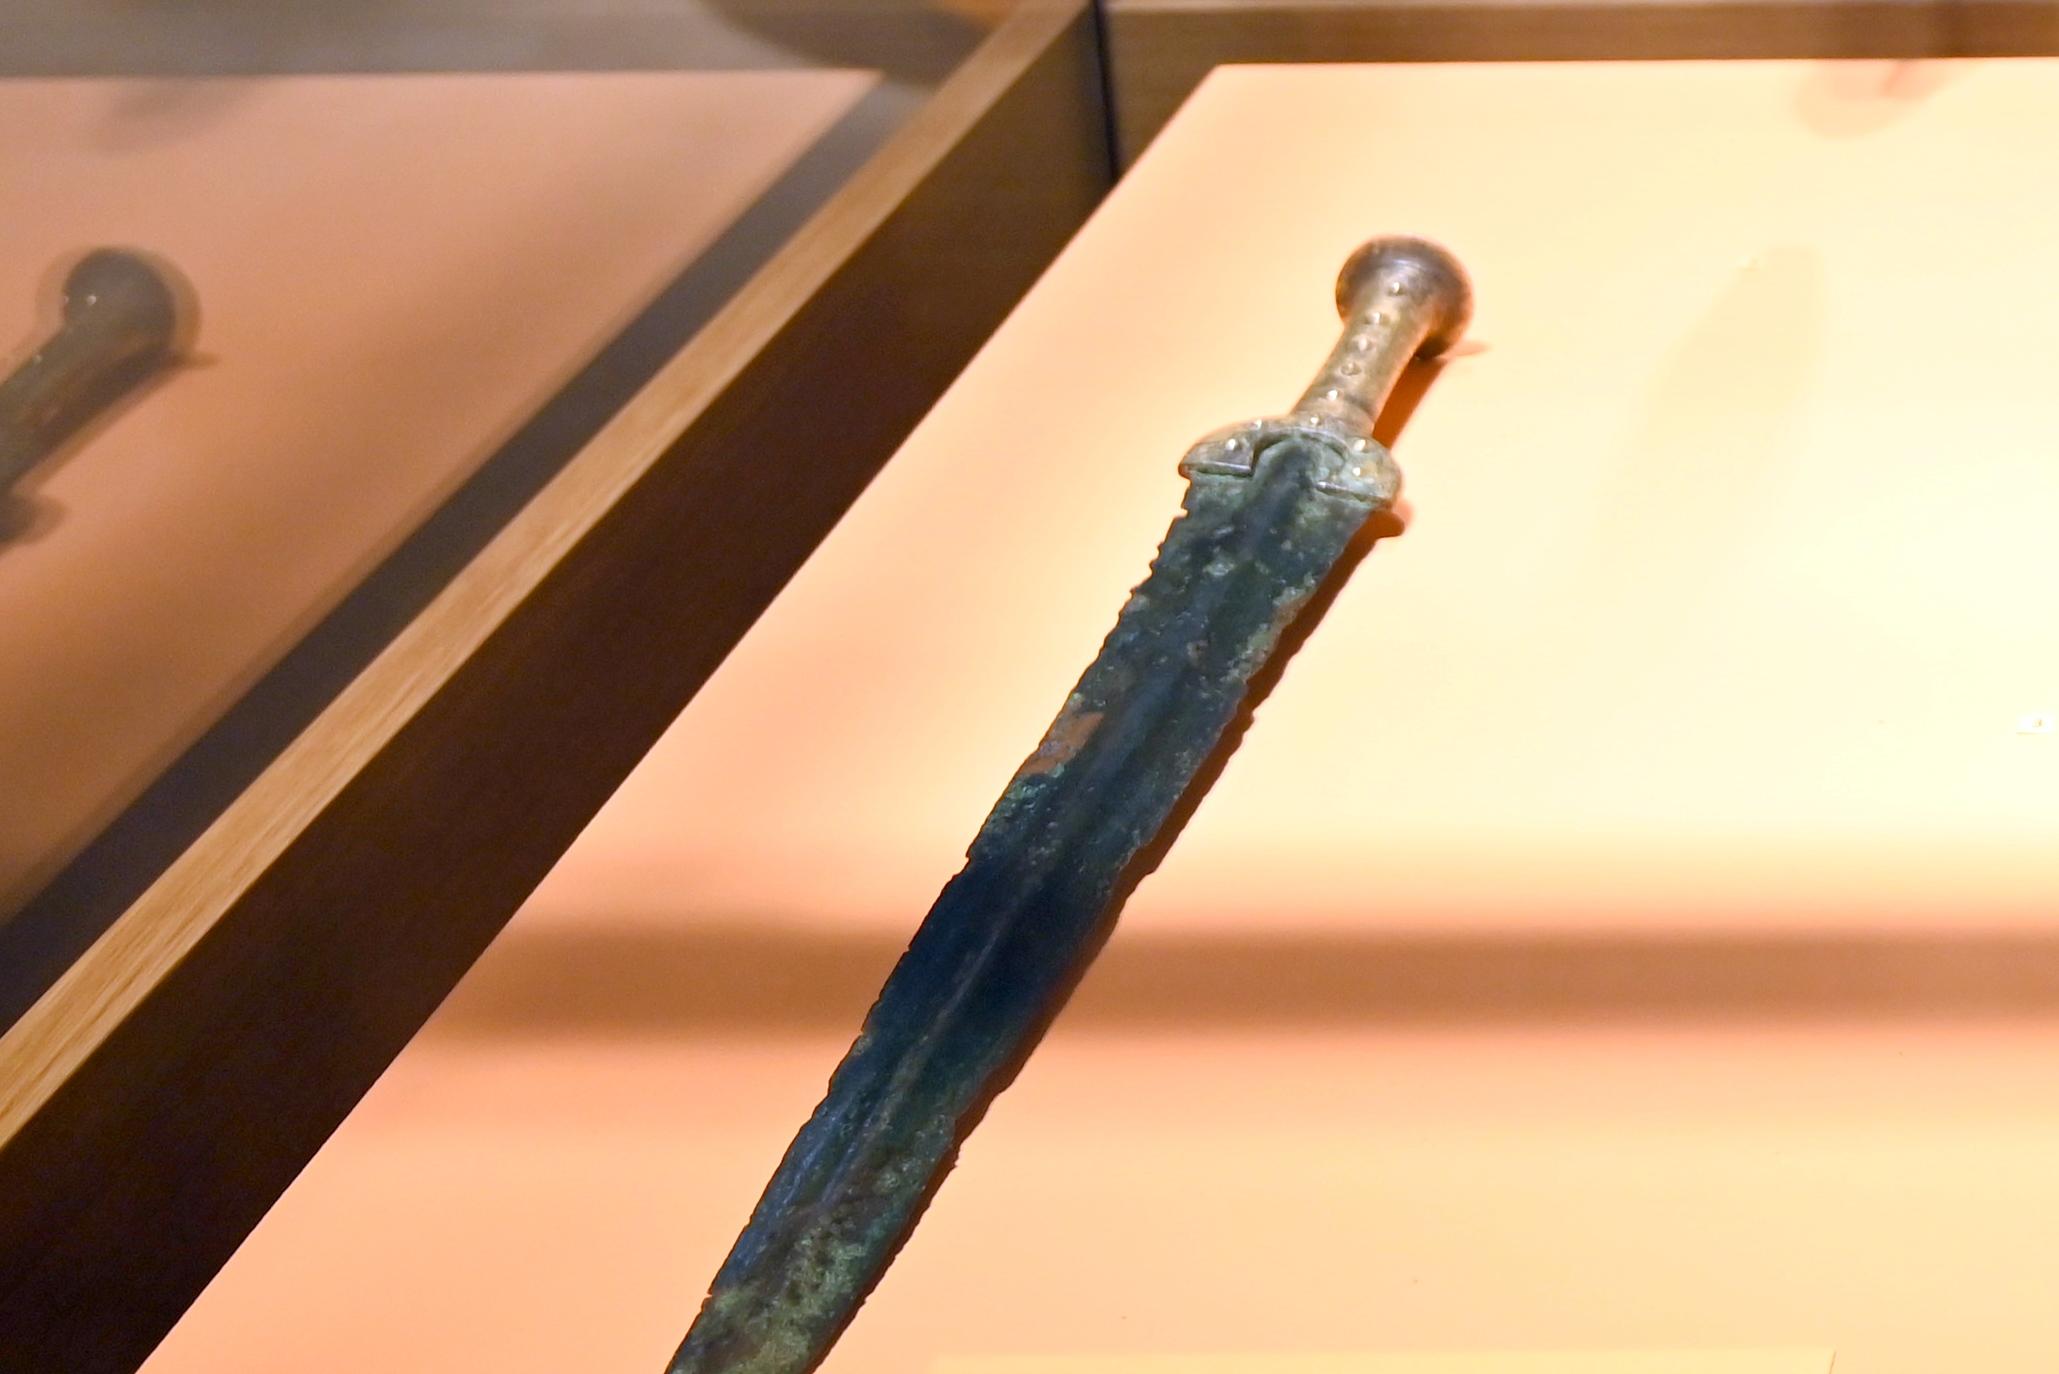 Schwert von Oedt (Klinge), Bronzezeit, 3365 - 700 v. Chr., Bild 1/2